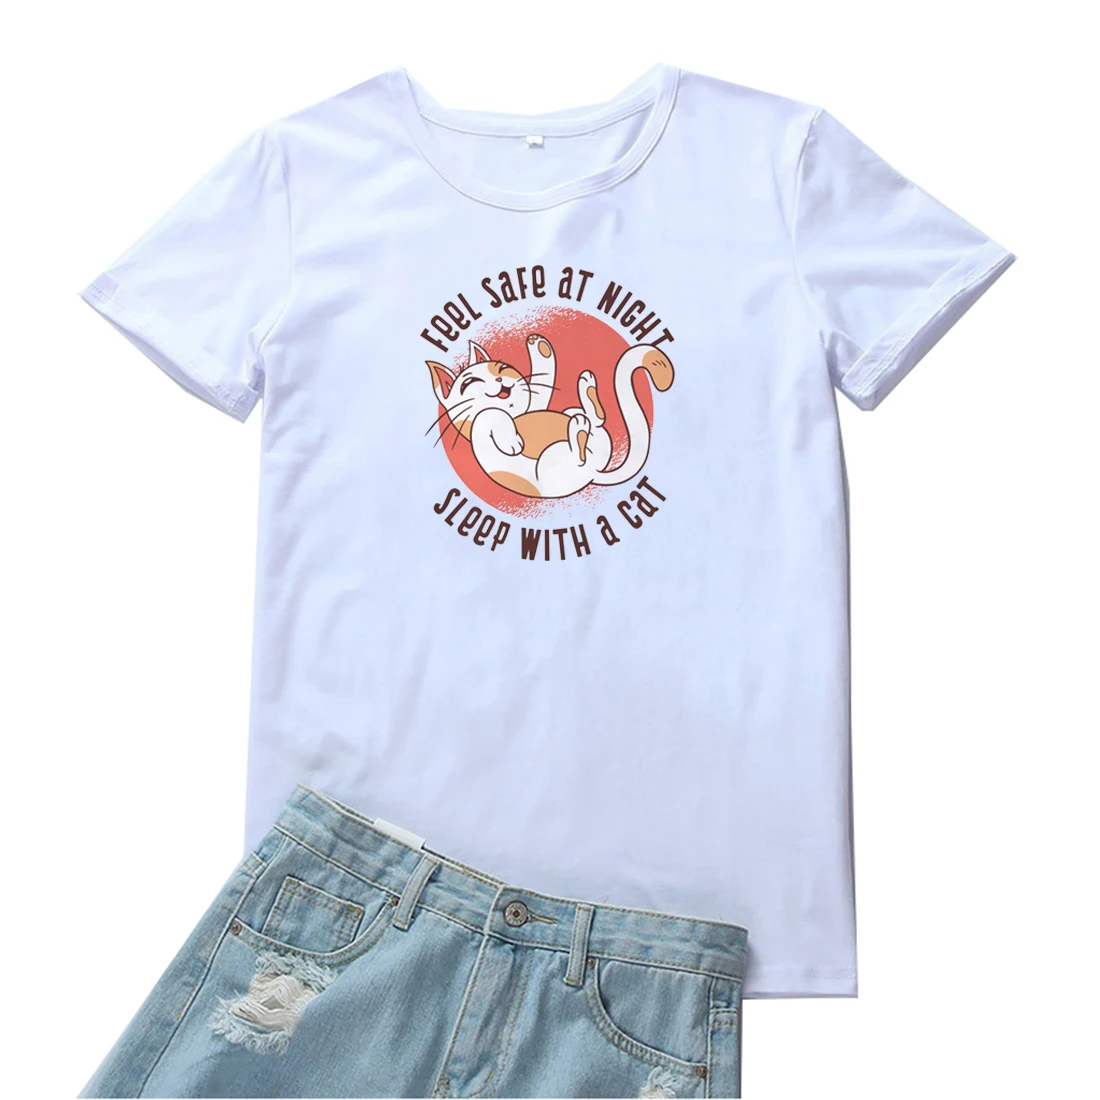 

Женская футболка с надписью «Feel Safe At A Night Sleep with A Cat», Забавный топ с принтом графики, футболки для женщин, кавайная одежда, женская футболка